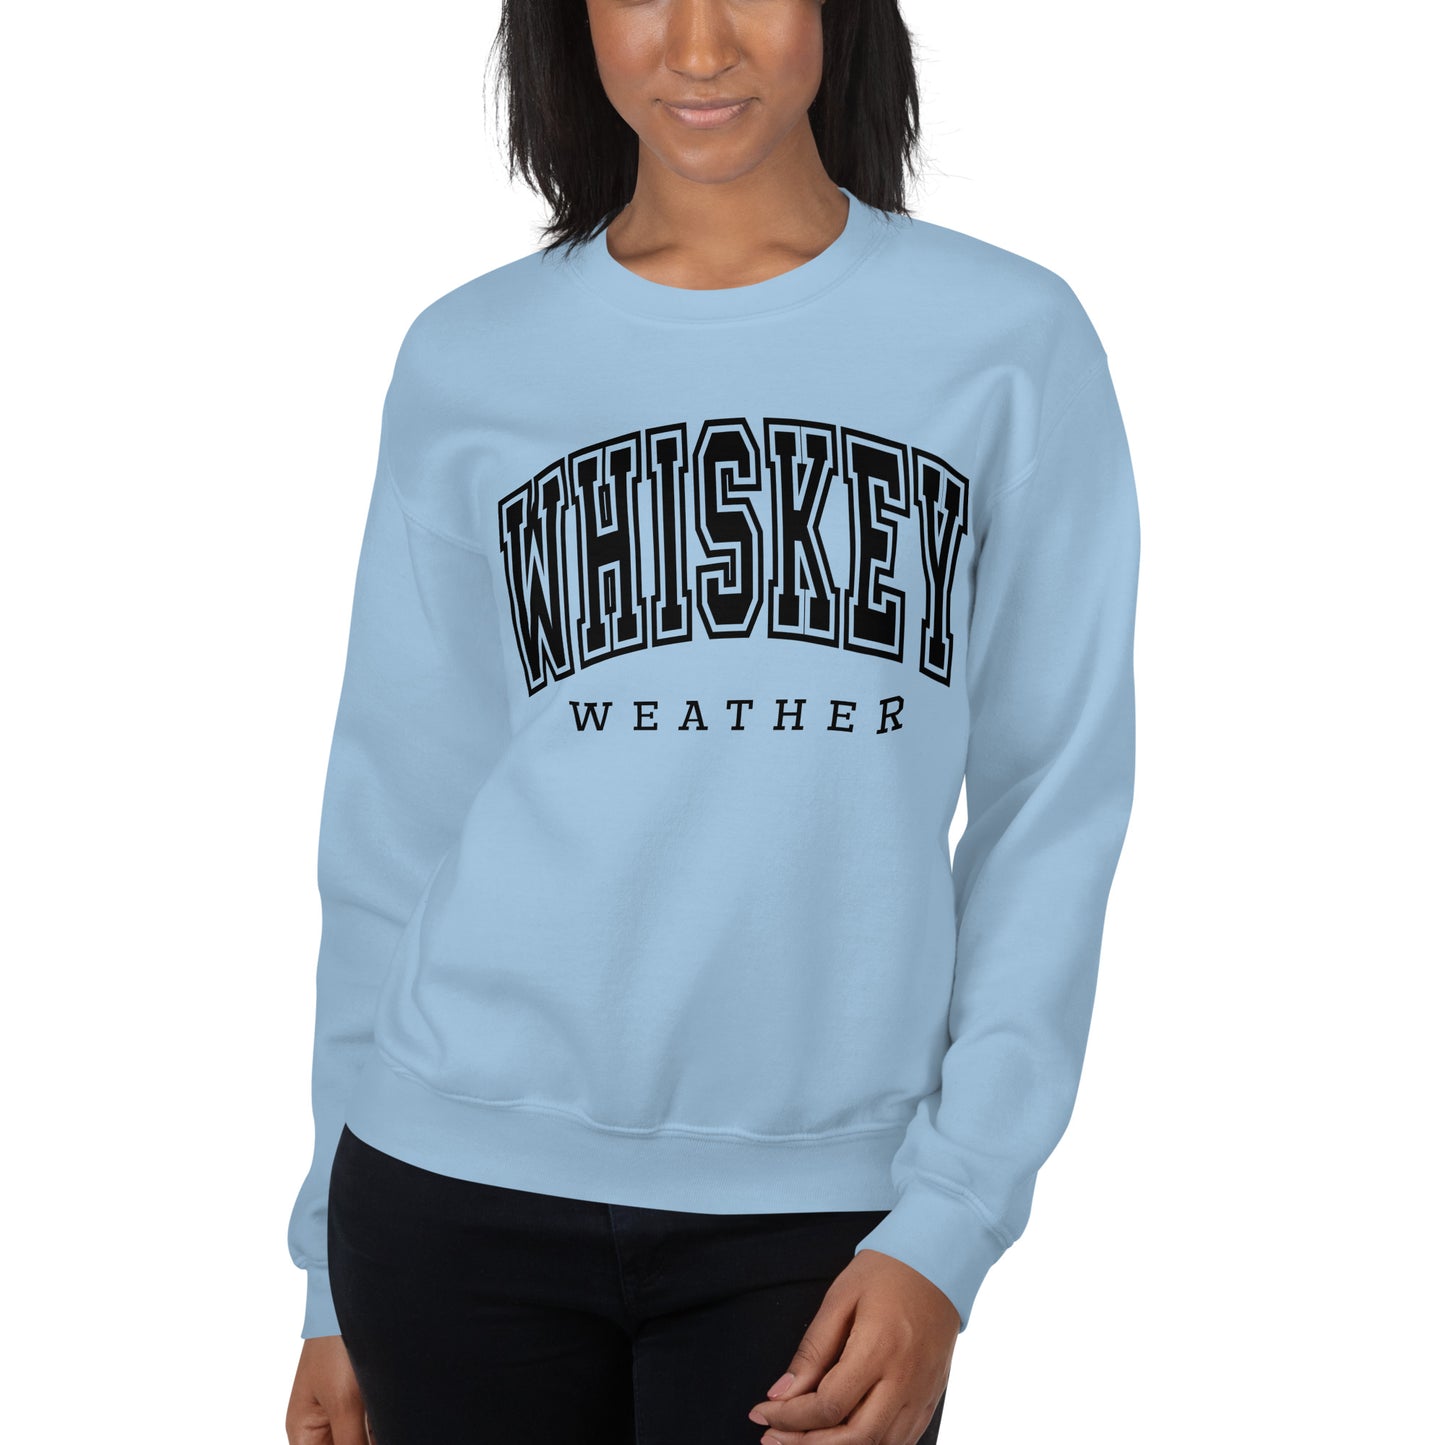 Whiskey Weather Sweatshirt